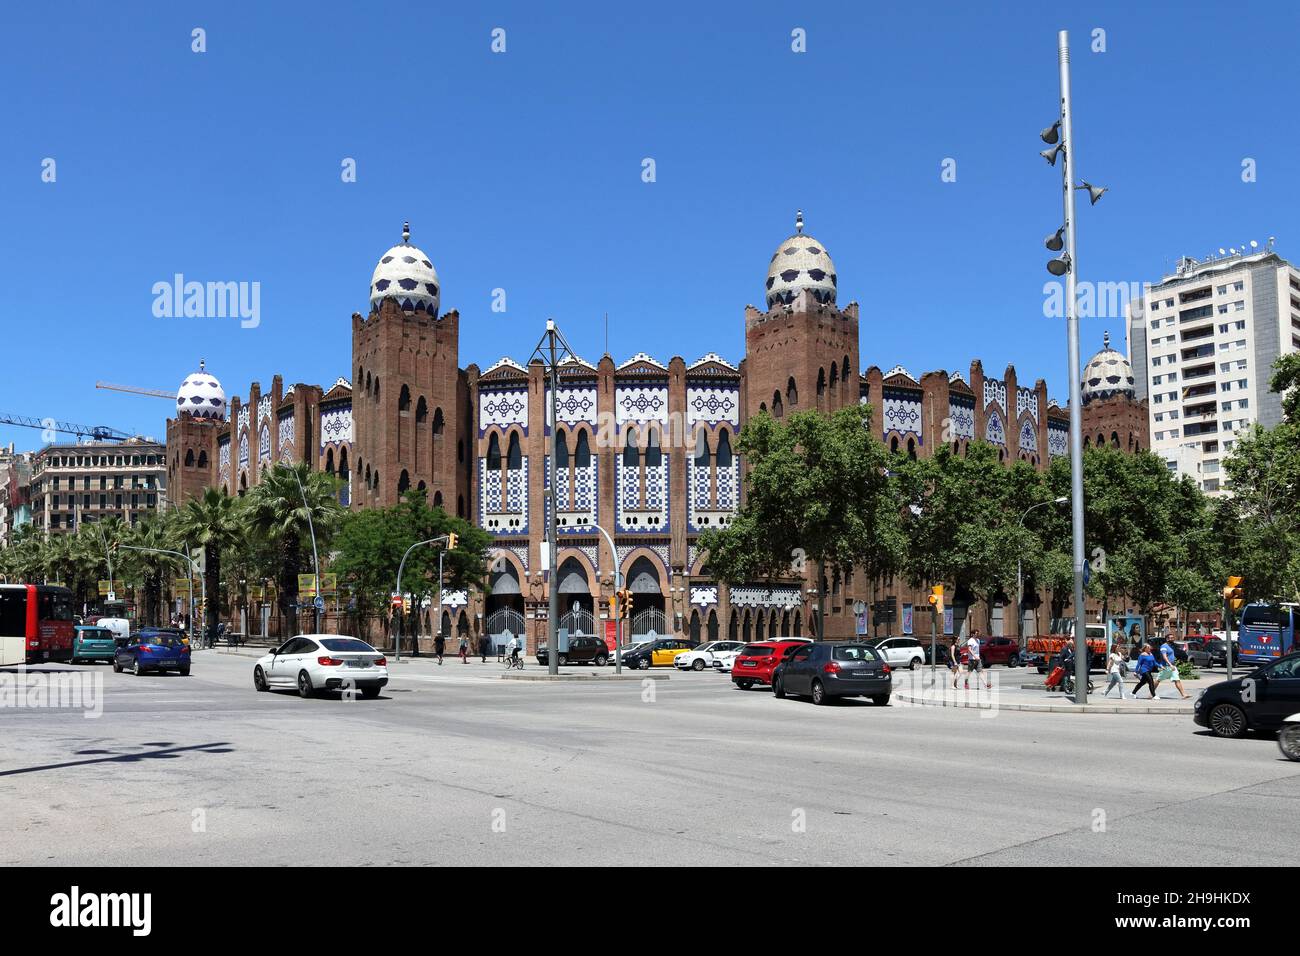 BARCELONA, SPAIN - Jun 01, 2019: La monumental, former Plaza de Toros, on a sunny day in spring Stock Photo